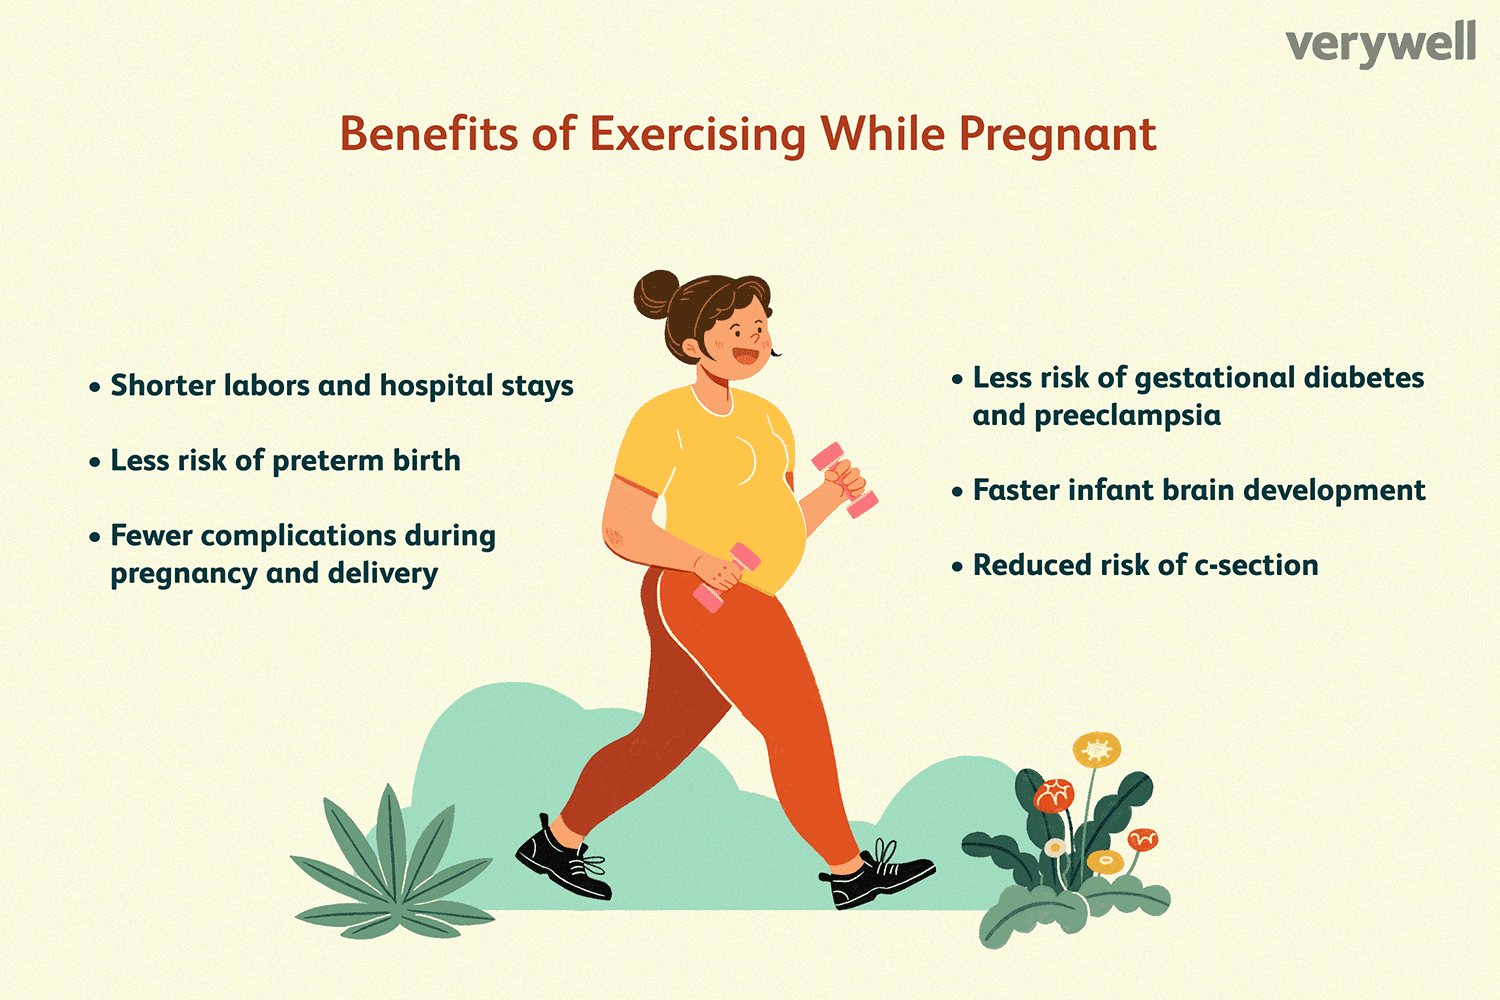 De voordelen van sporten tijdens de zwangerschap